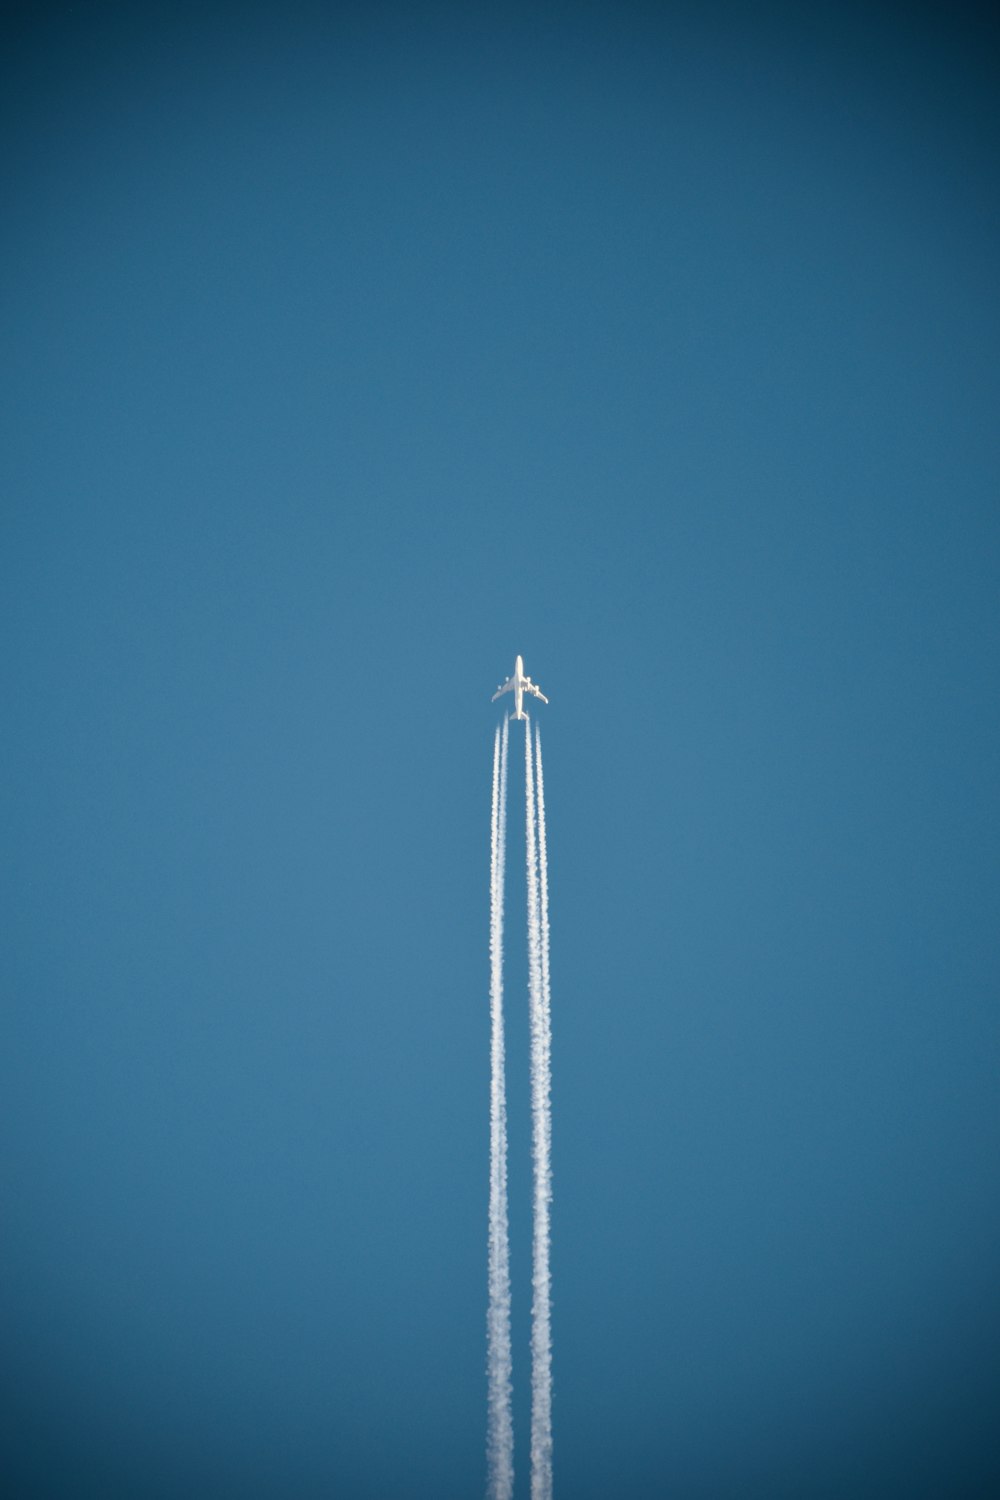 Un cohete volando en el cielo